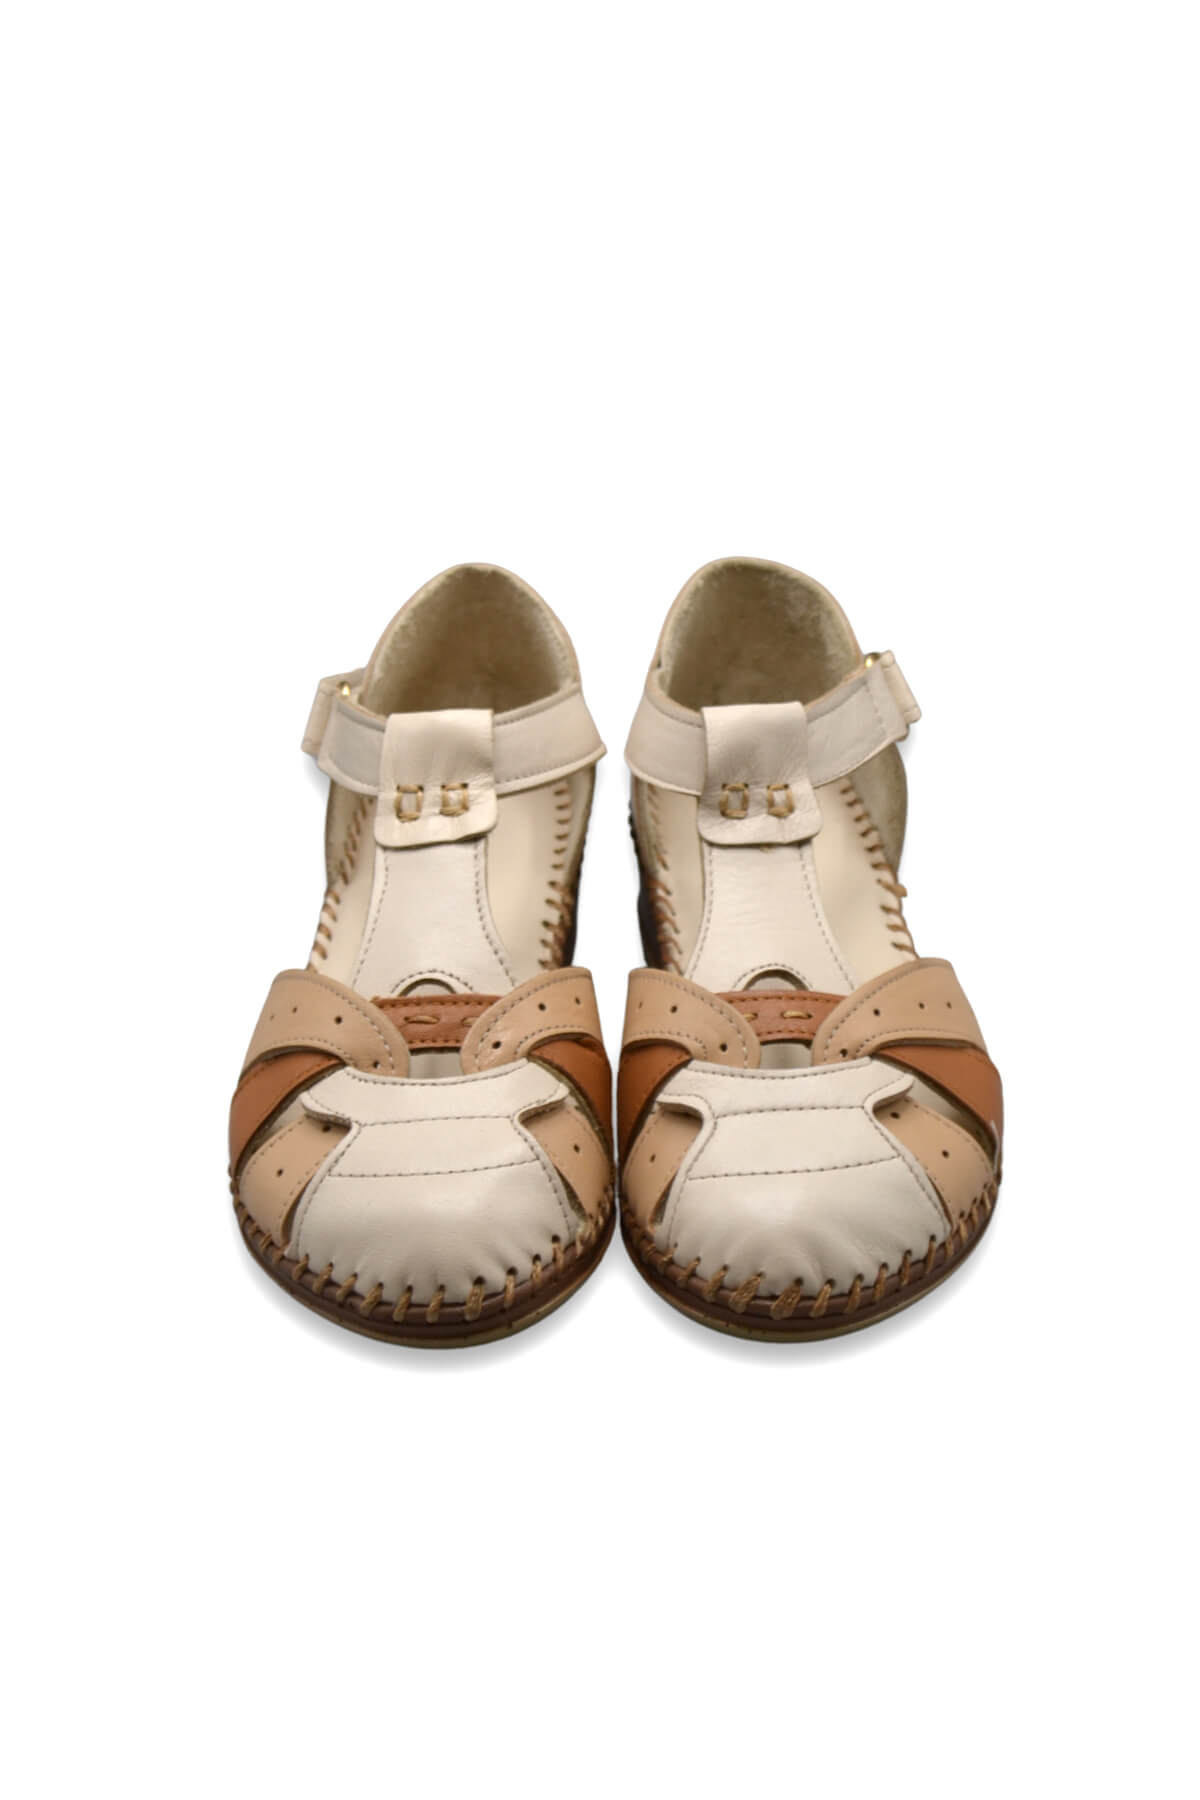 Kadın Comfort Deri Sandalet Bej 2313703Y - Thumbnail